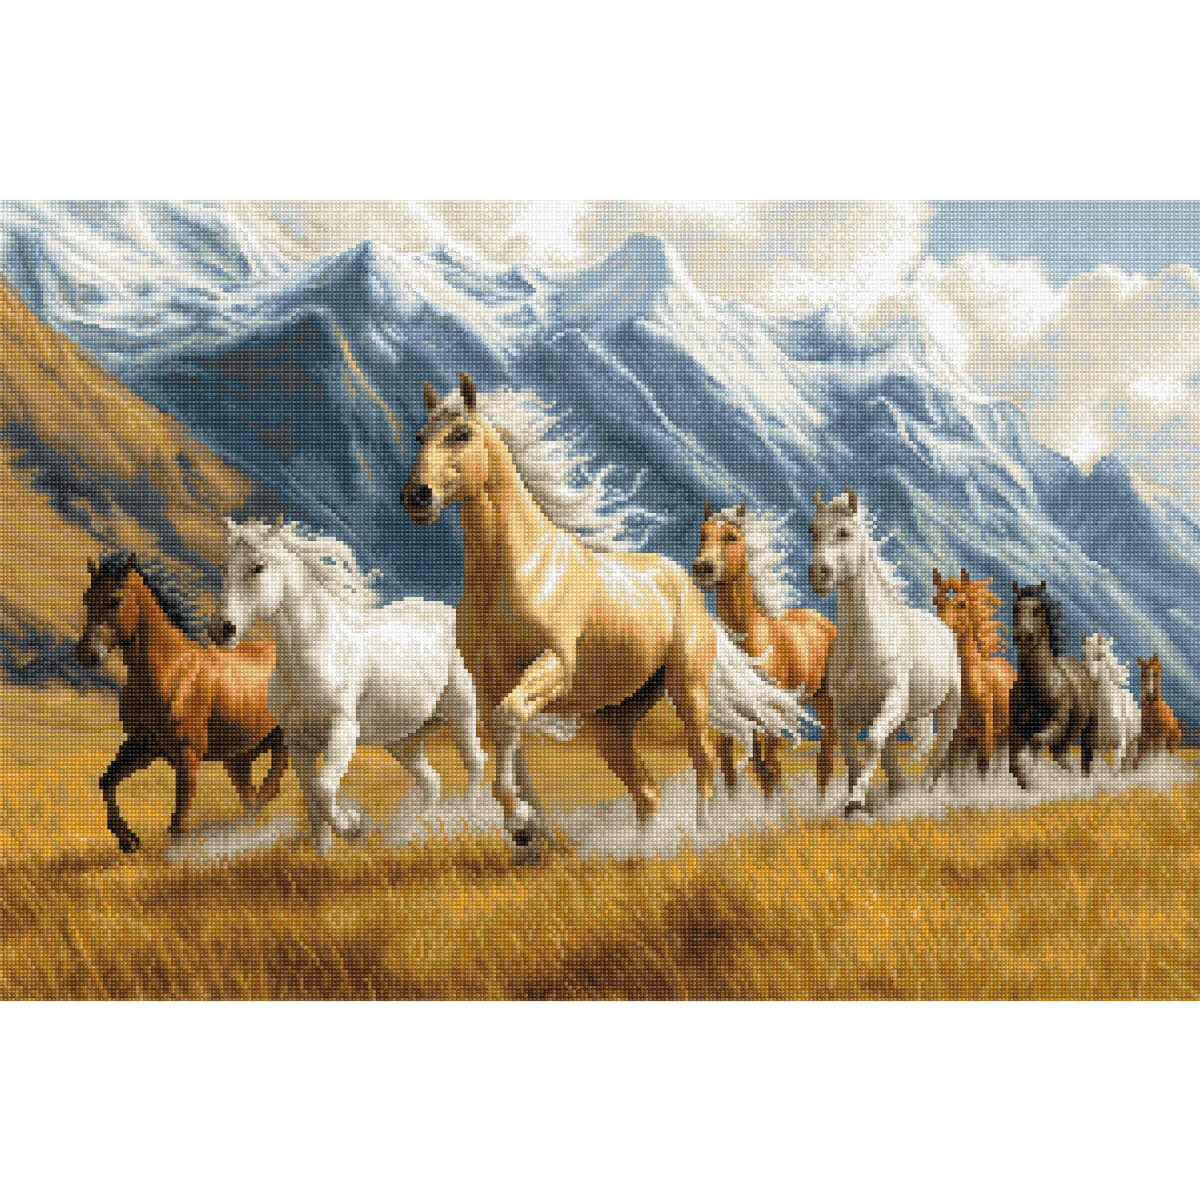 A herd of horses runs across a golden field of tall...